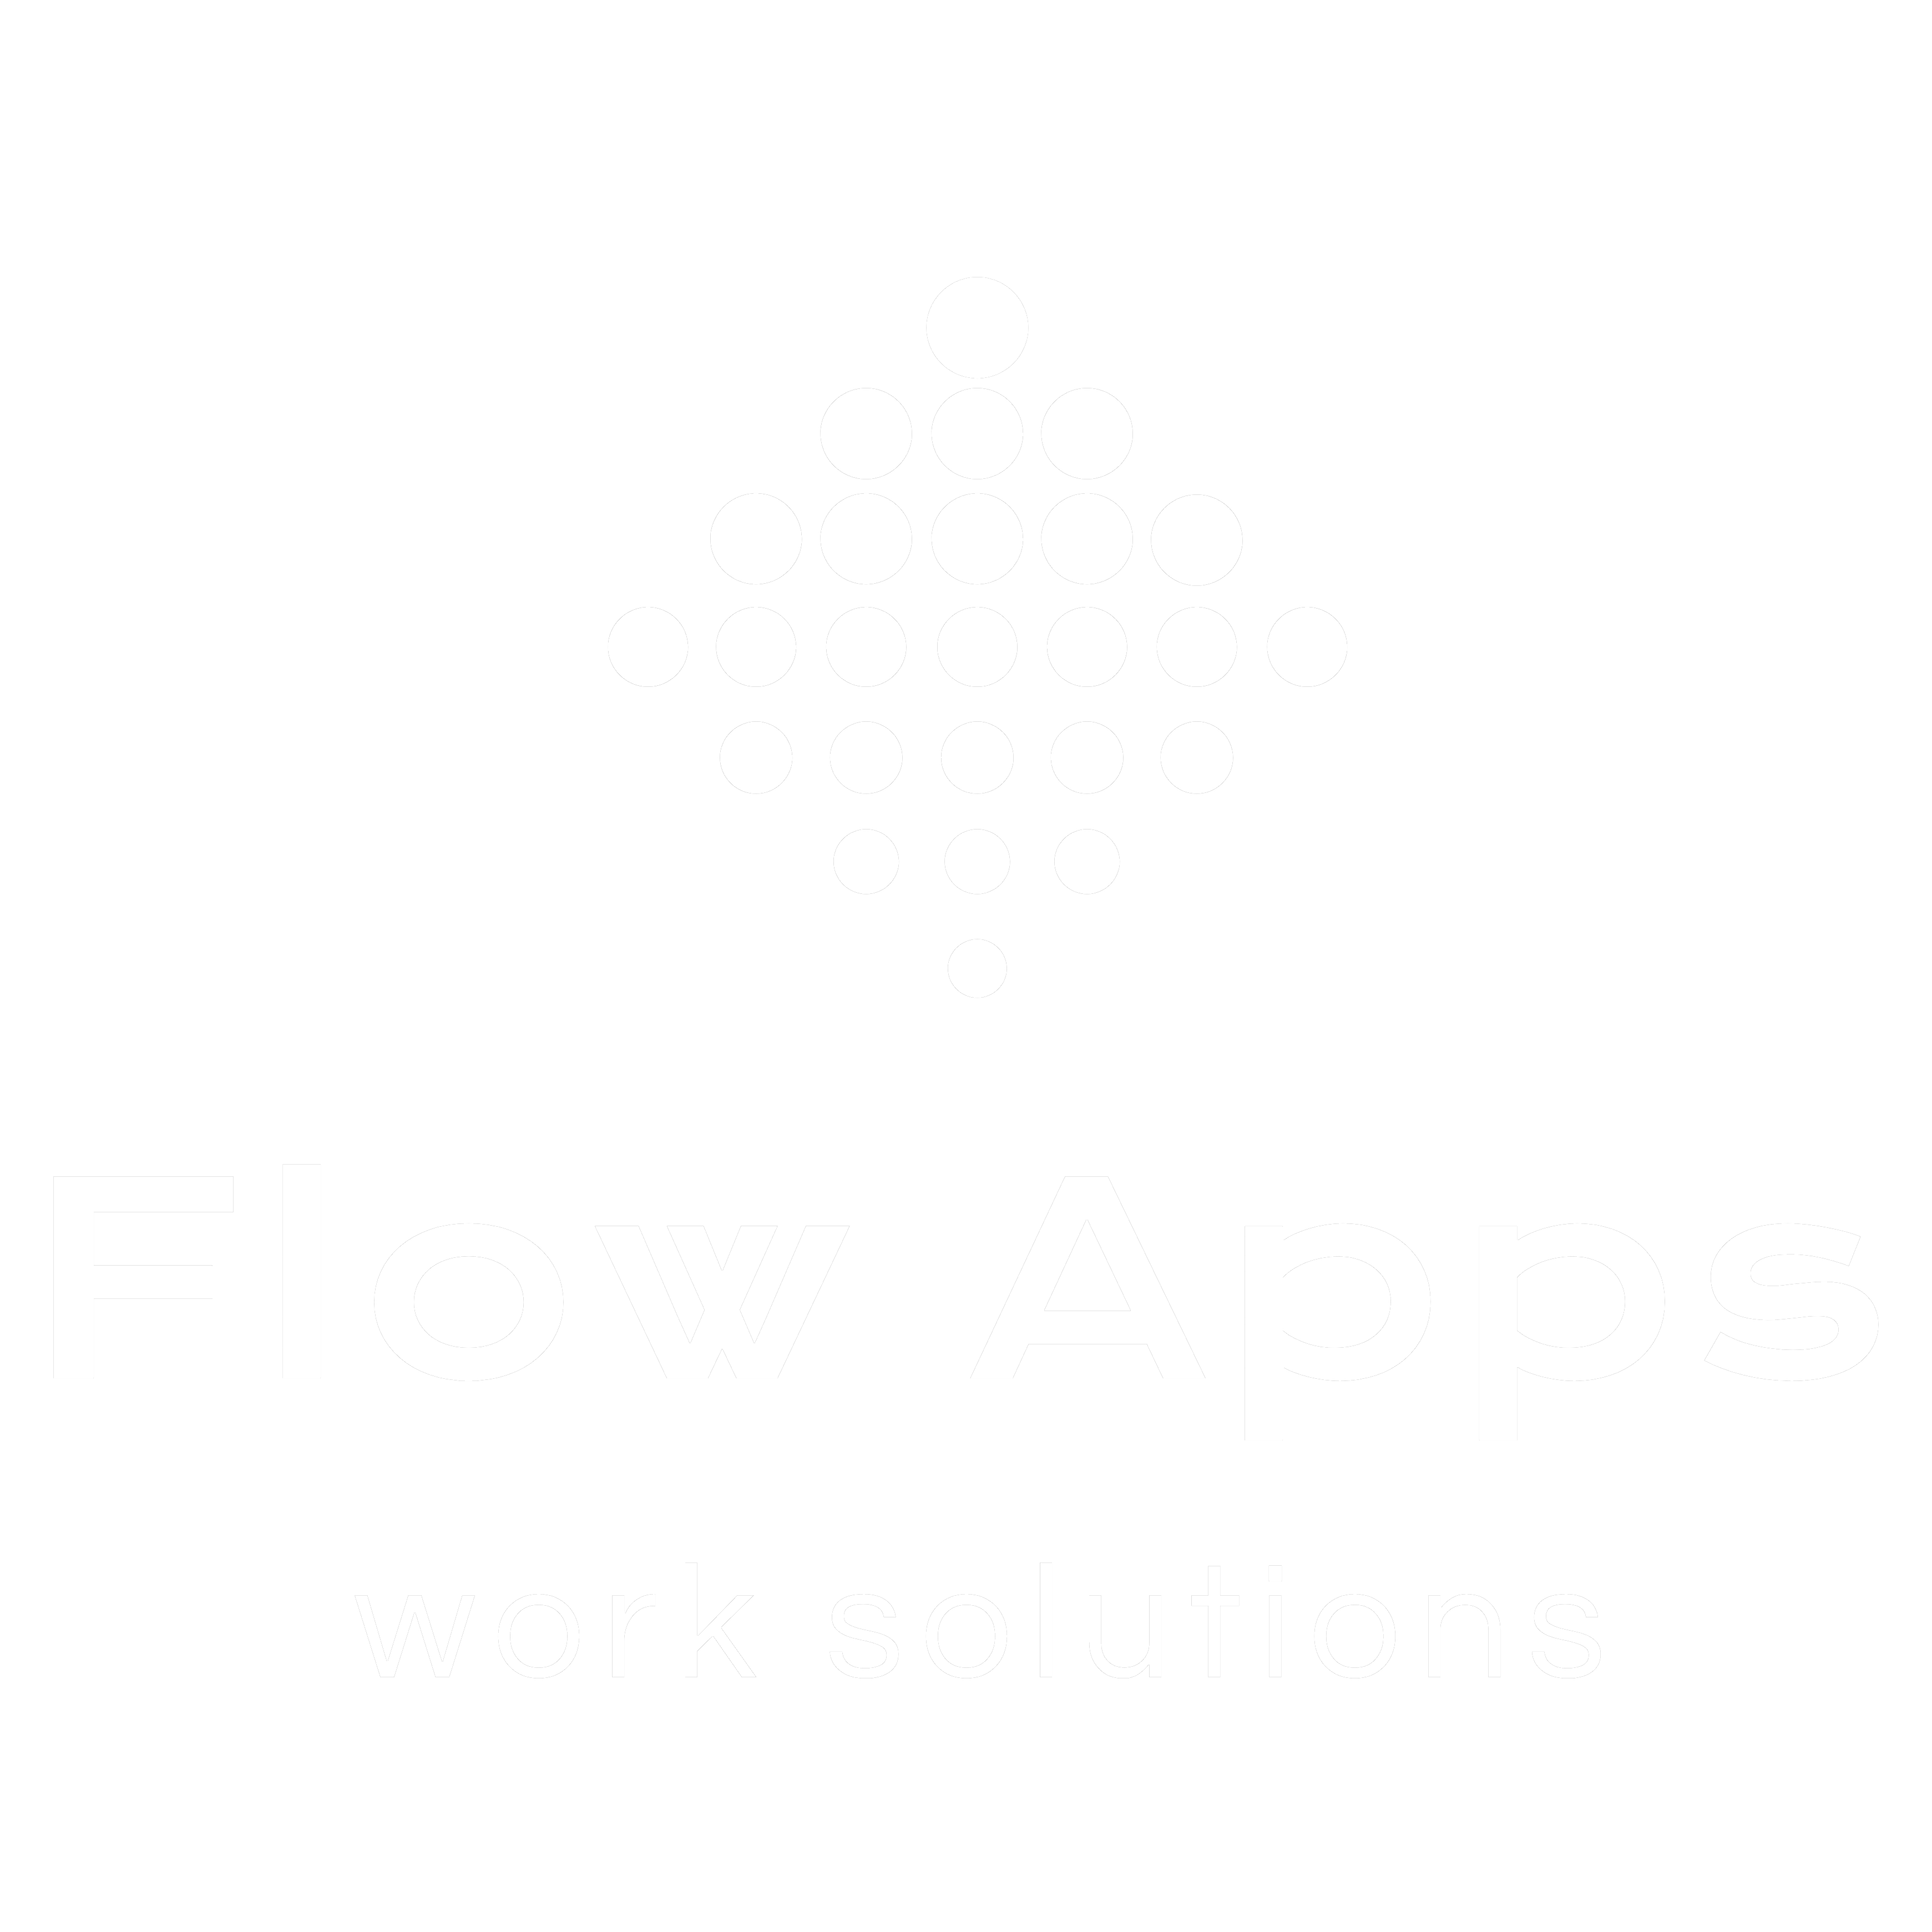 Flow Apps